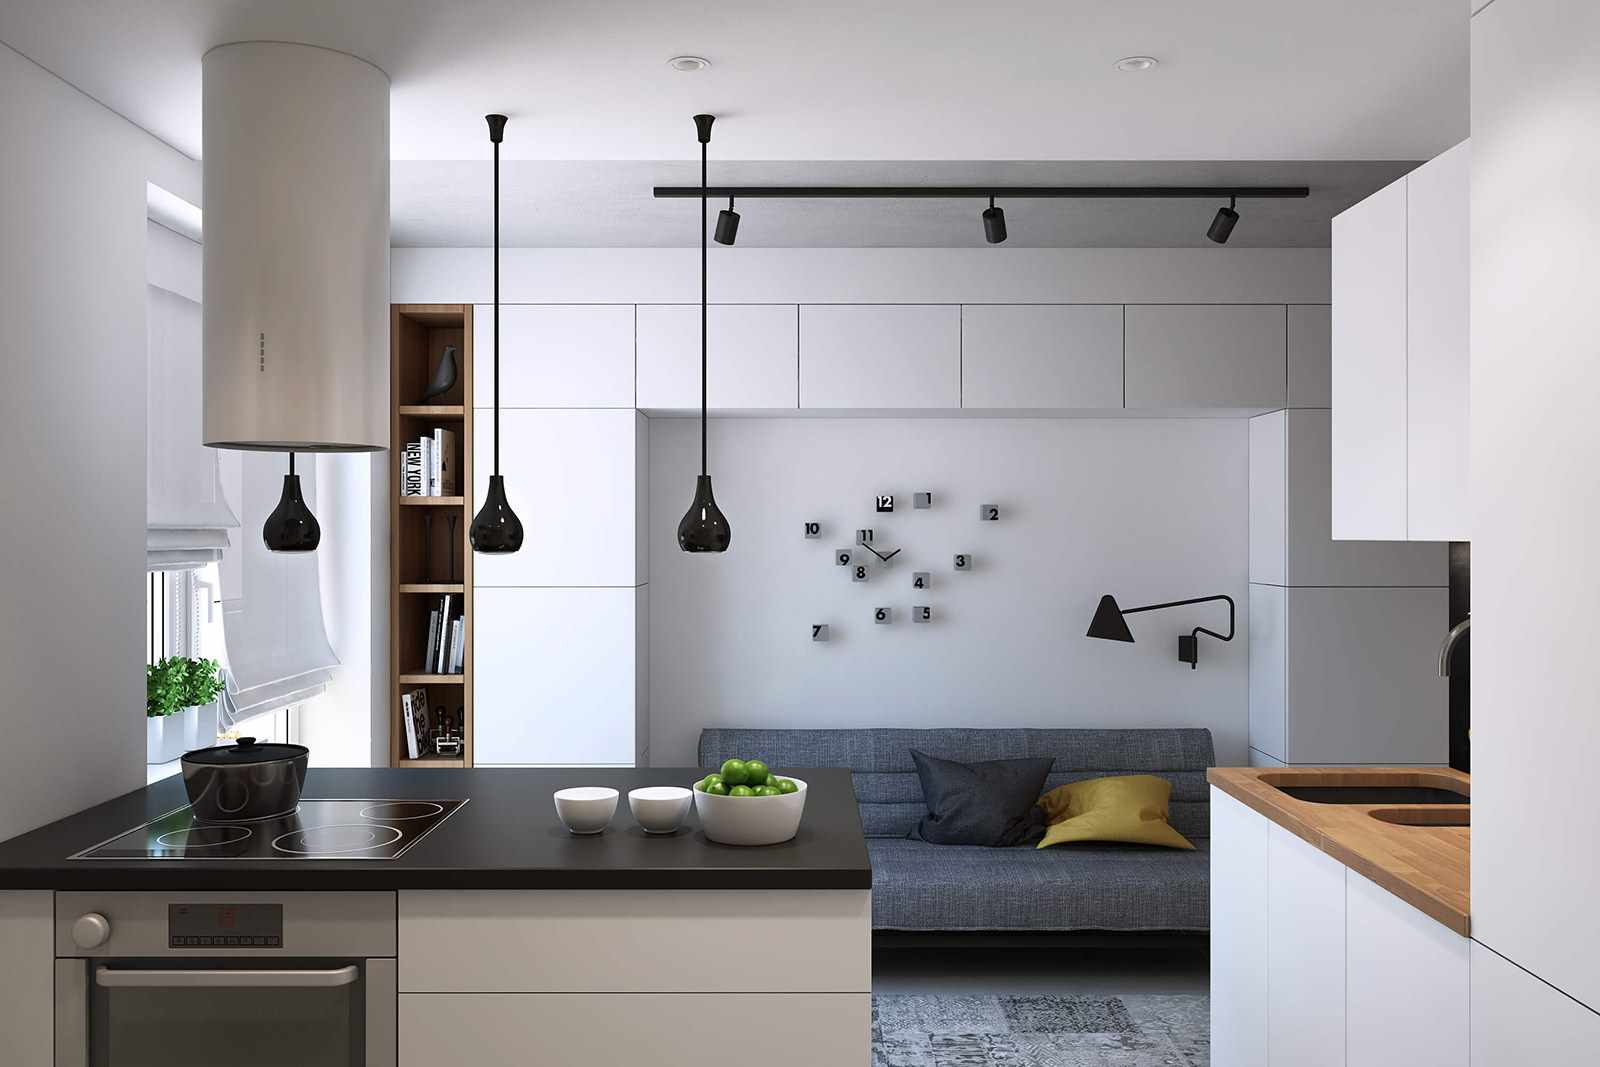 مثال على غرفة المعيشة المطبخ تصميم جميل 16 متر مربع